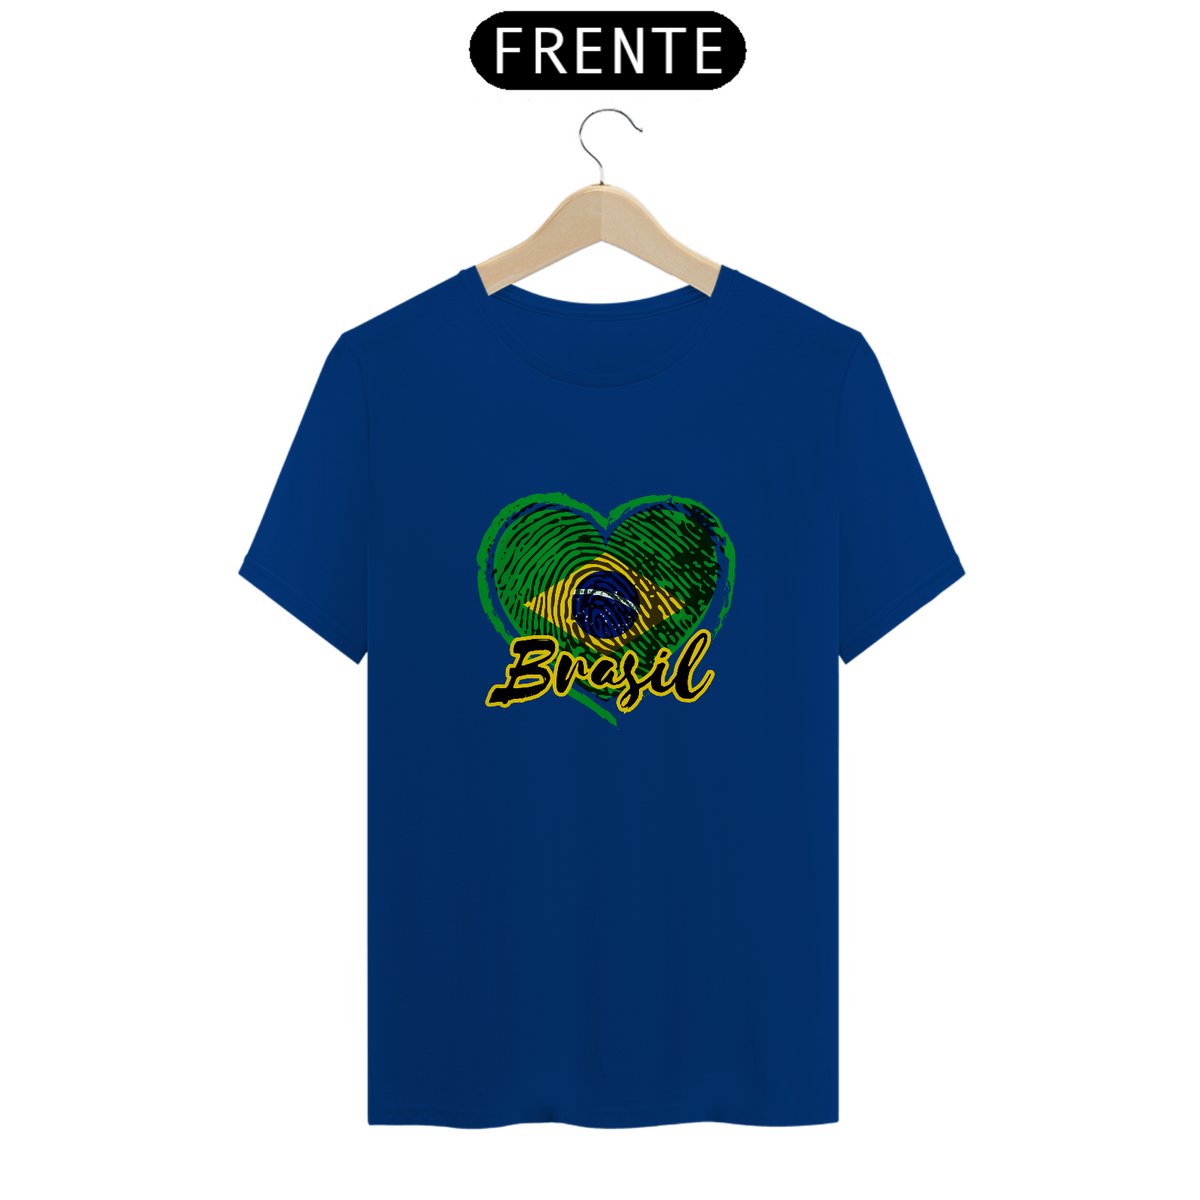 Nome do produto: Camiseta Coração do Brasil